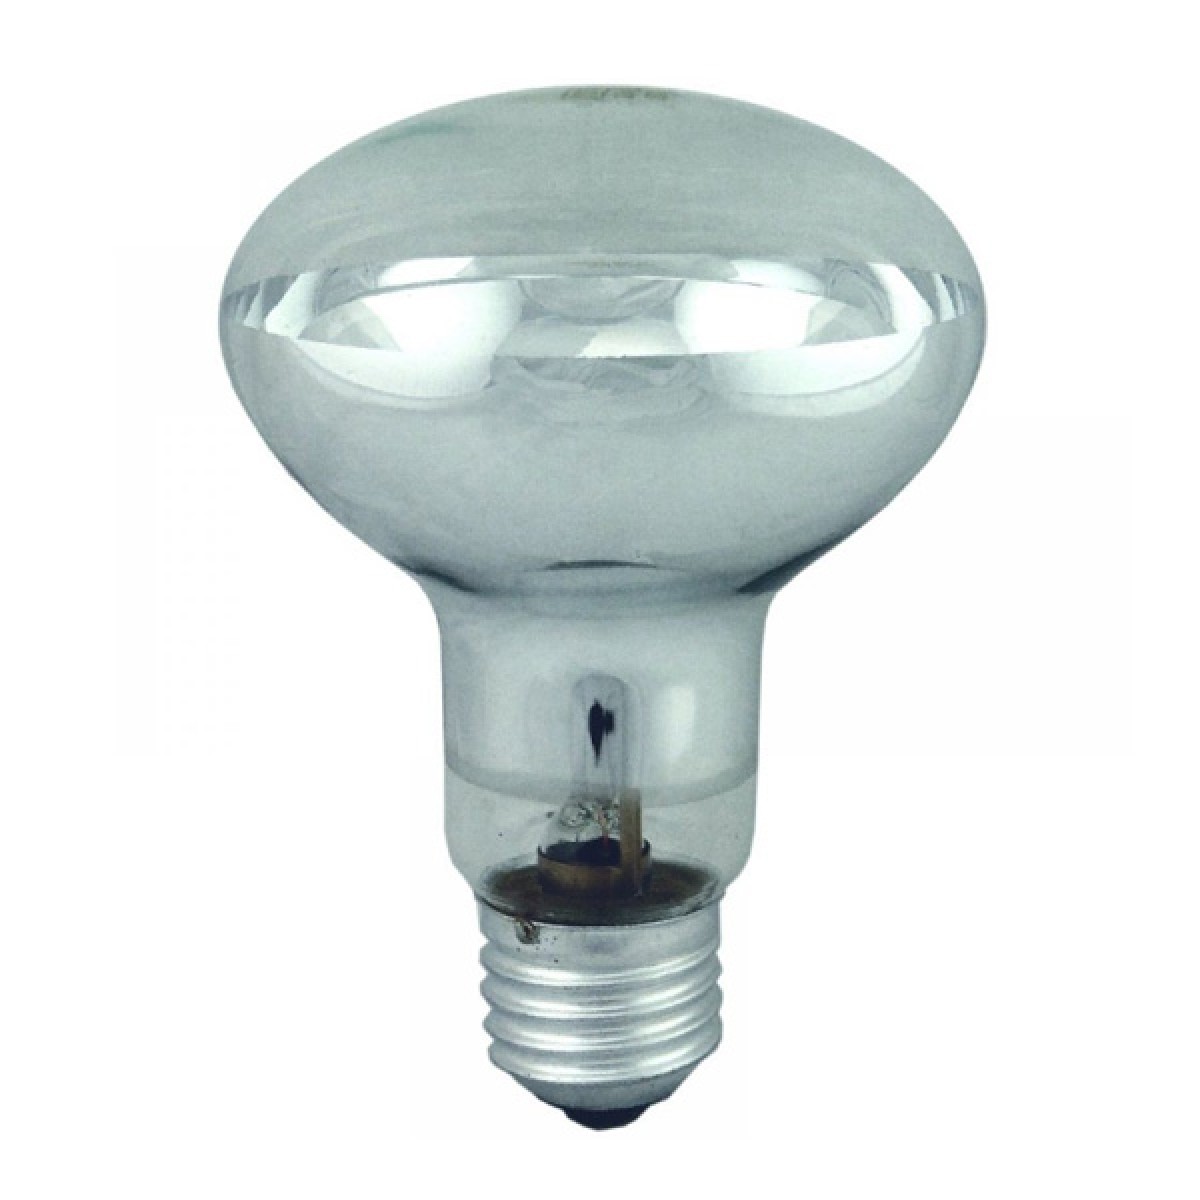 10x Dimmable Halogen Spot Light Bulb R80 E27/ES 42w 60watt  5 Packs 2 = 10 Bulbs 